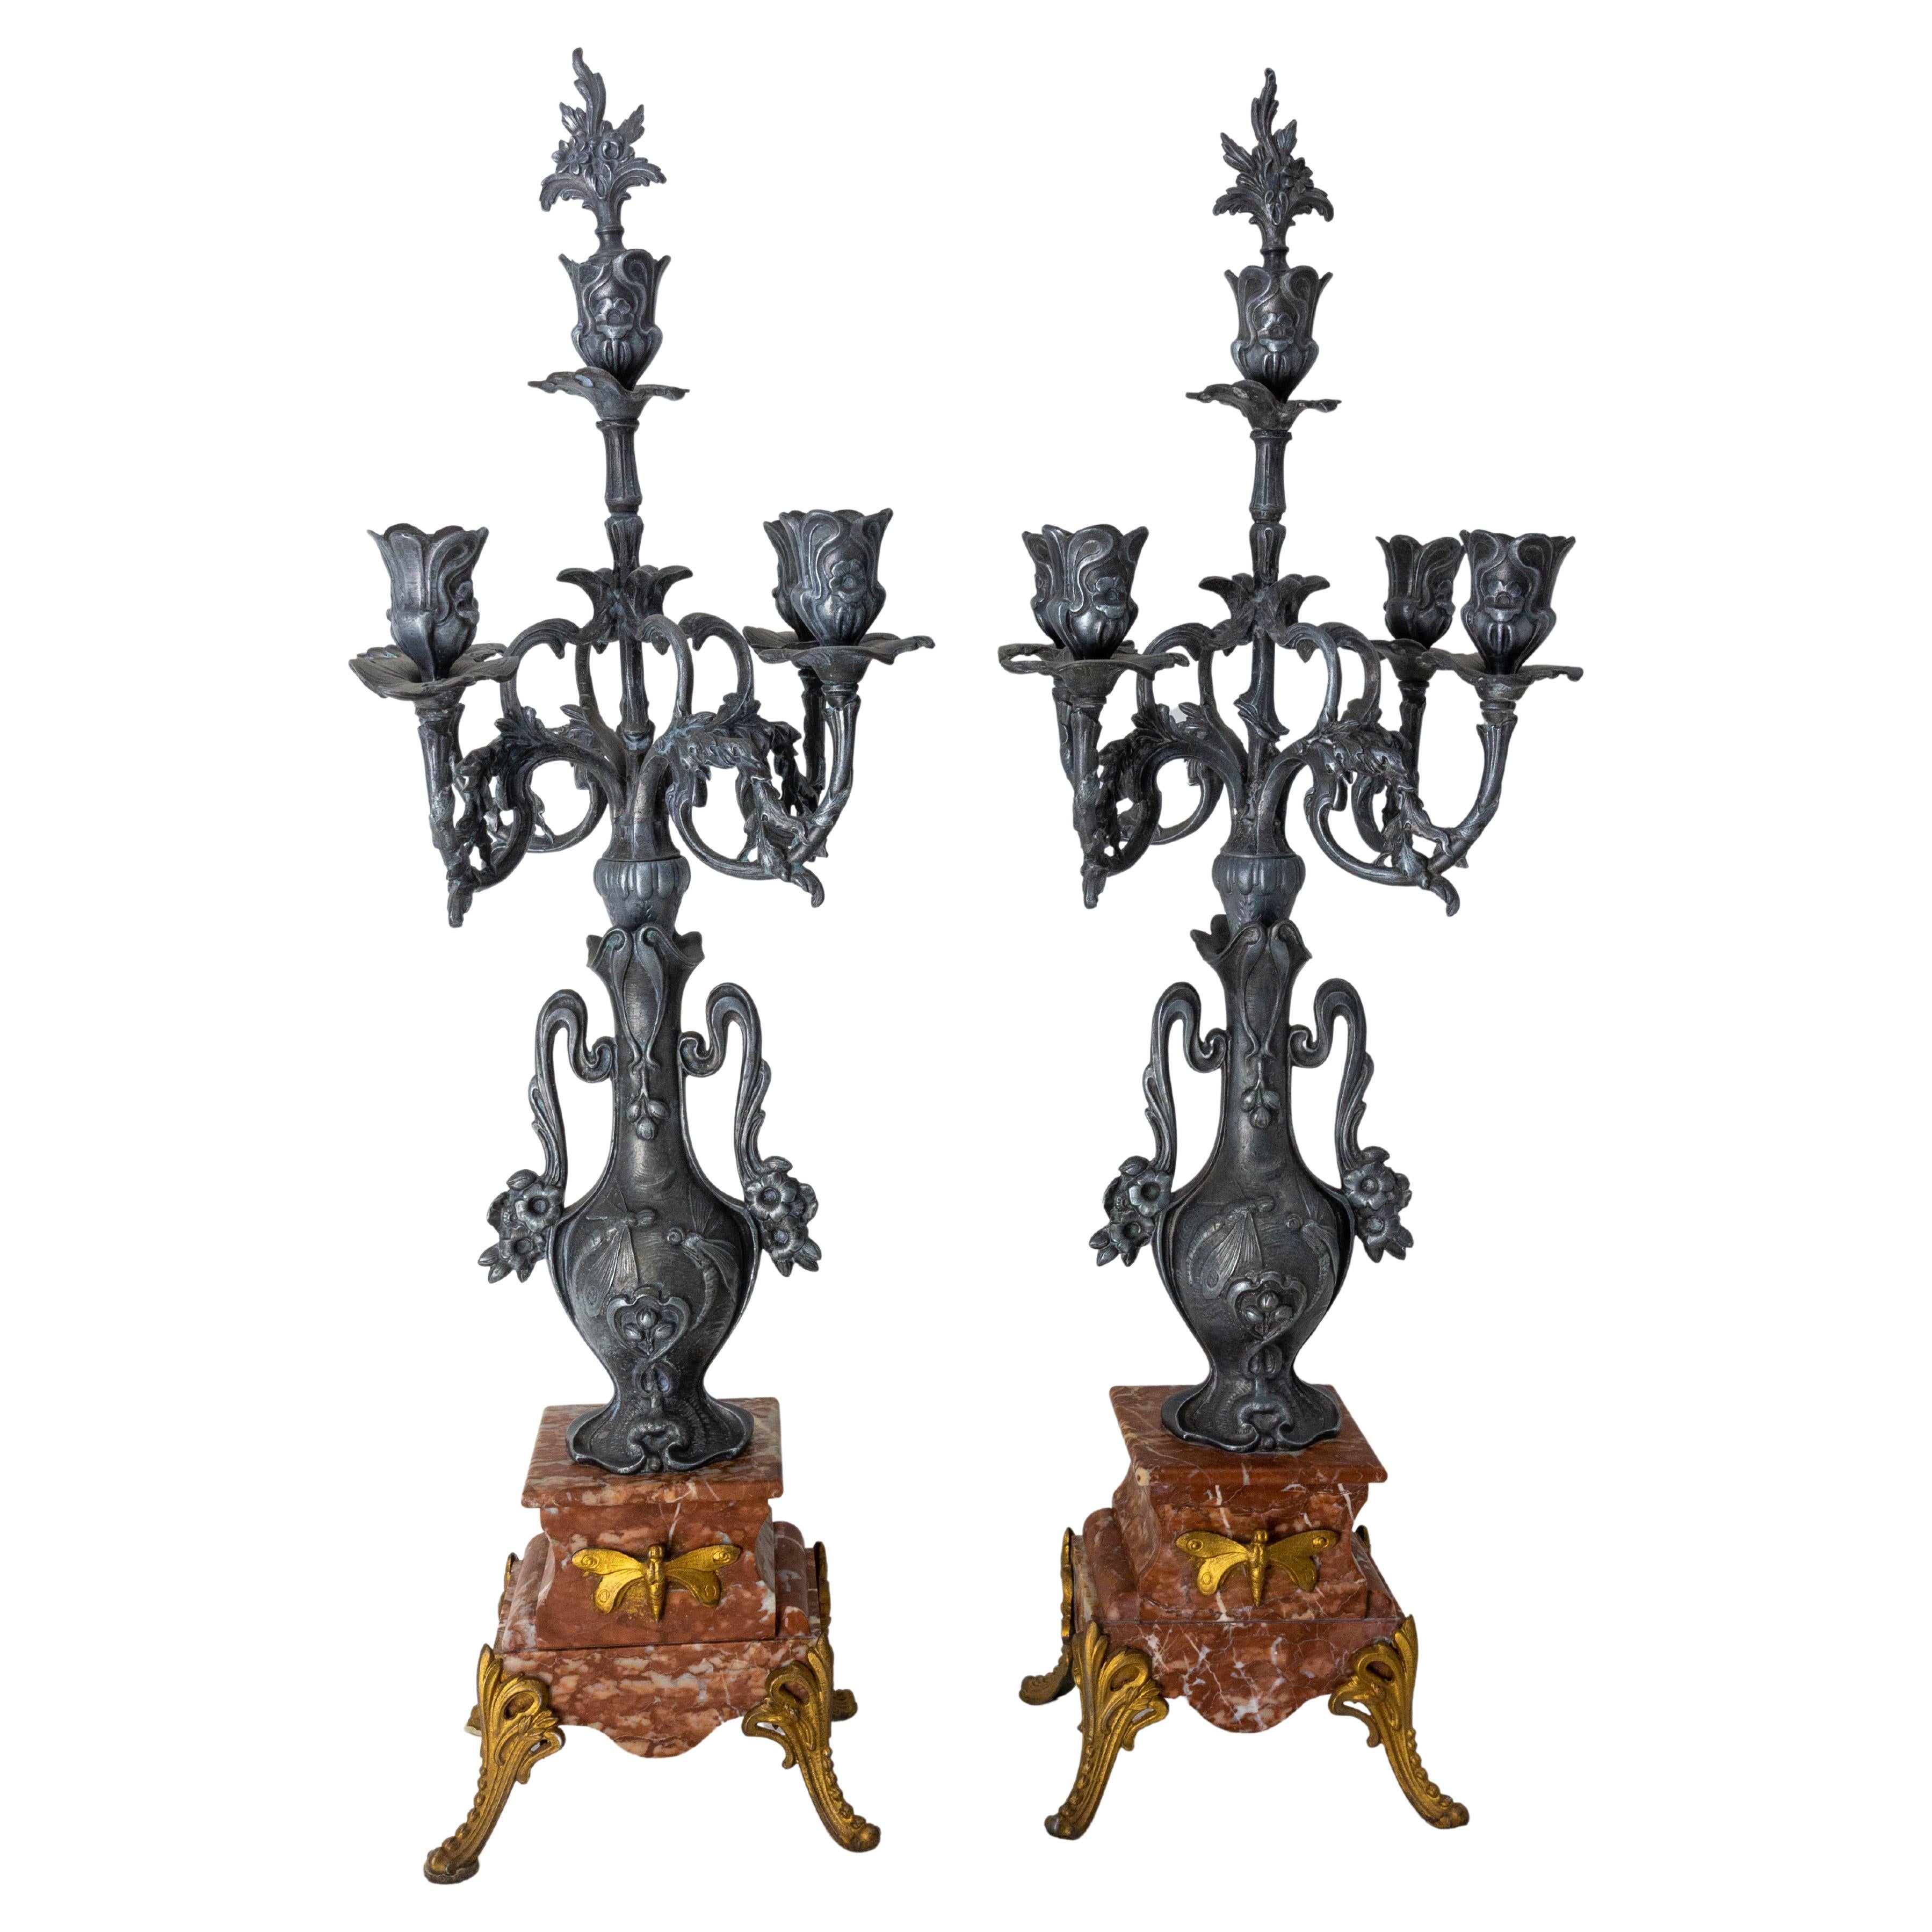 Details about   Antique Vintage Art Nouveau Ornate Metal 3/5 Arm Candelabra Candlestick Decor 